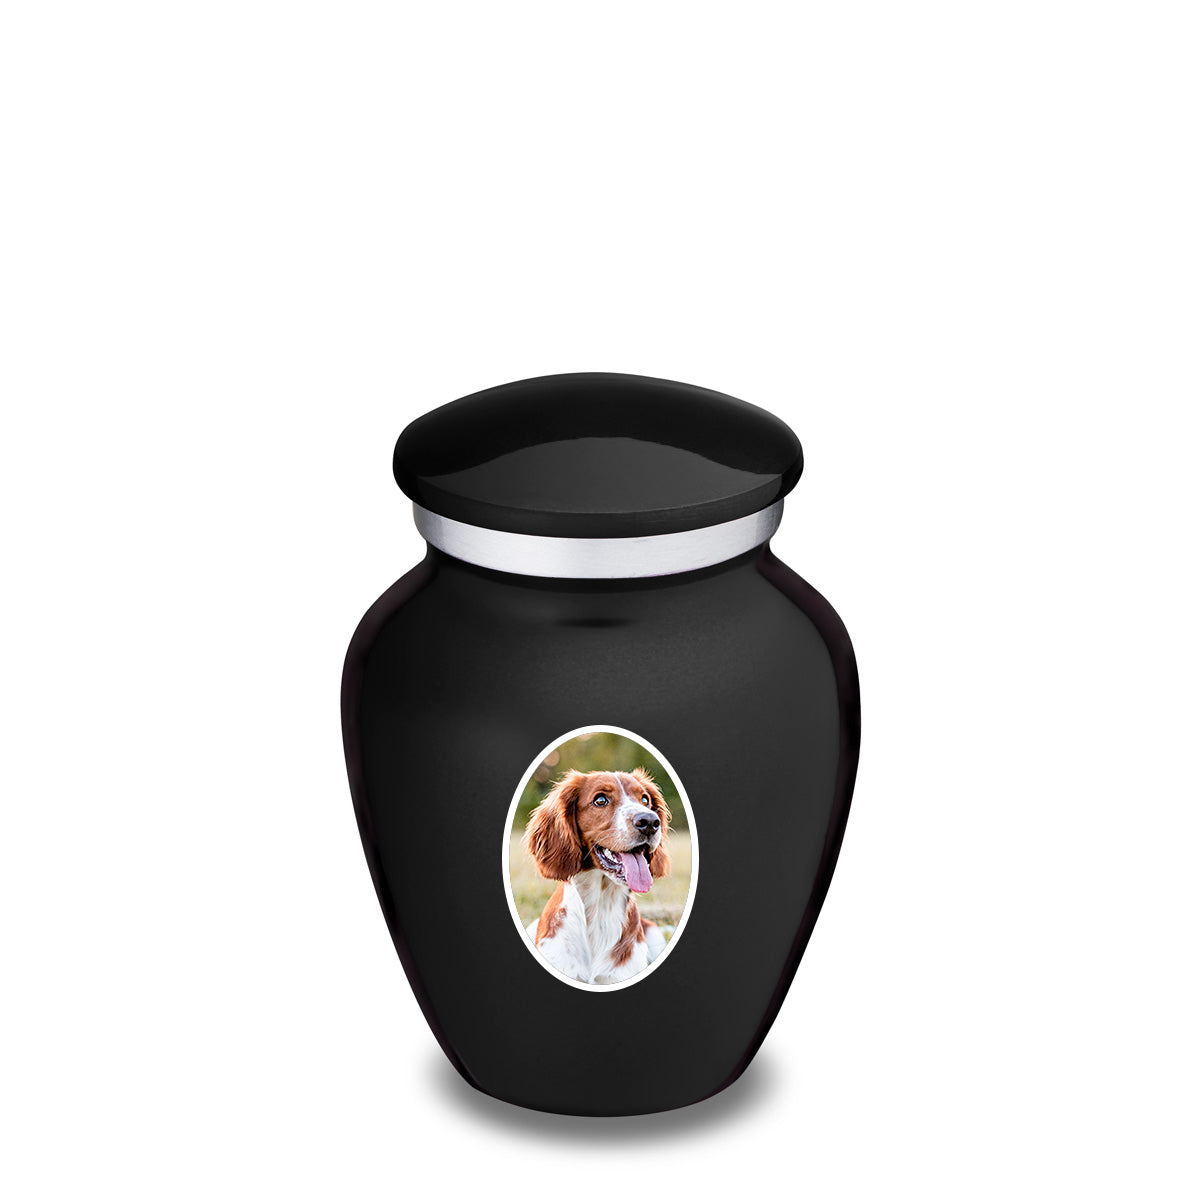 Keepsake Pet Embrace Black Portrait Cremation Urn